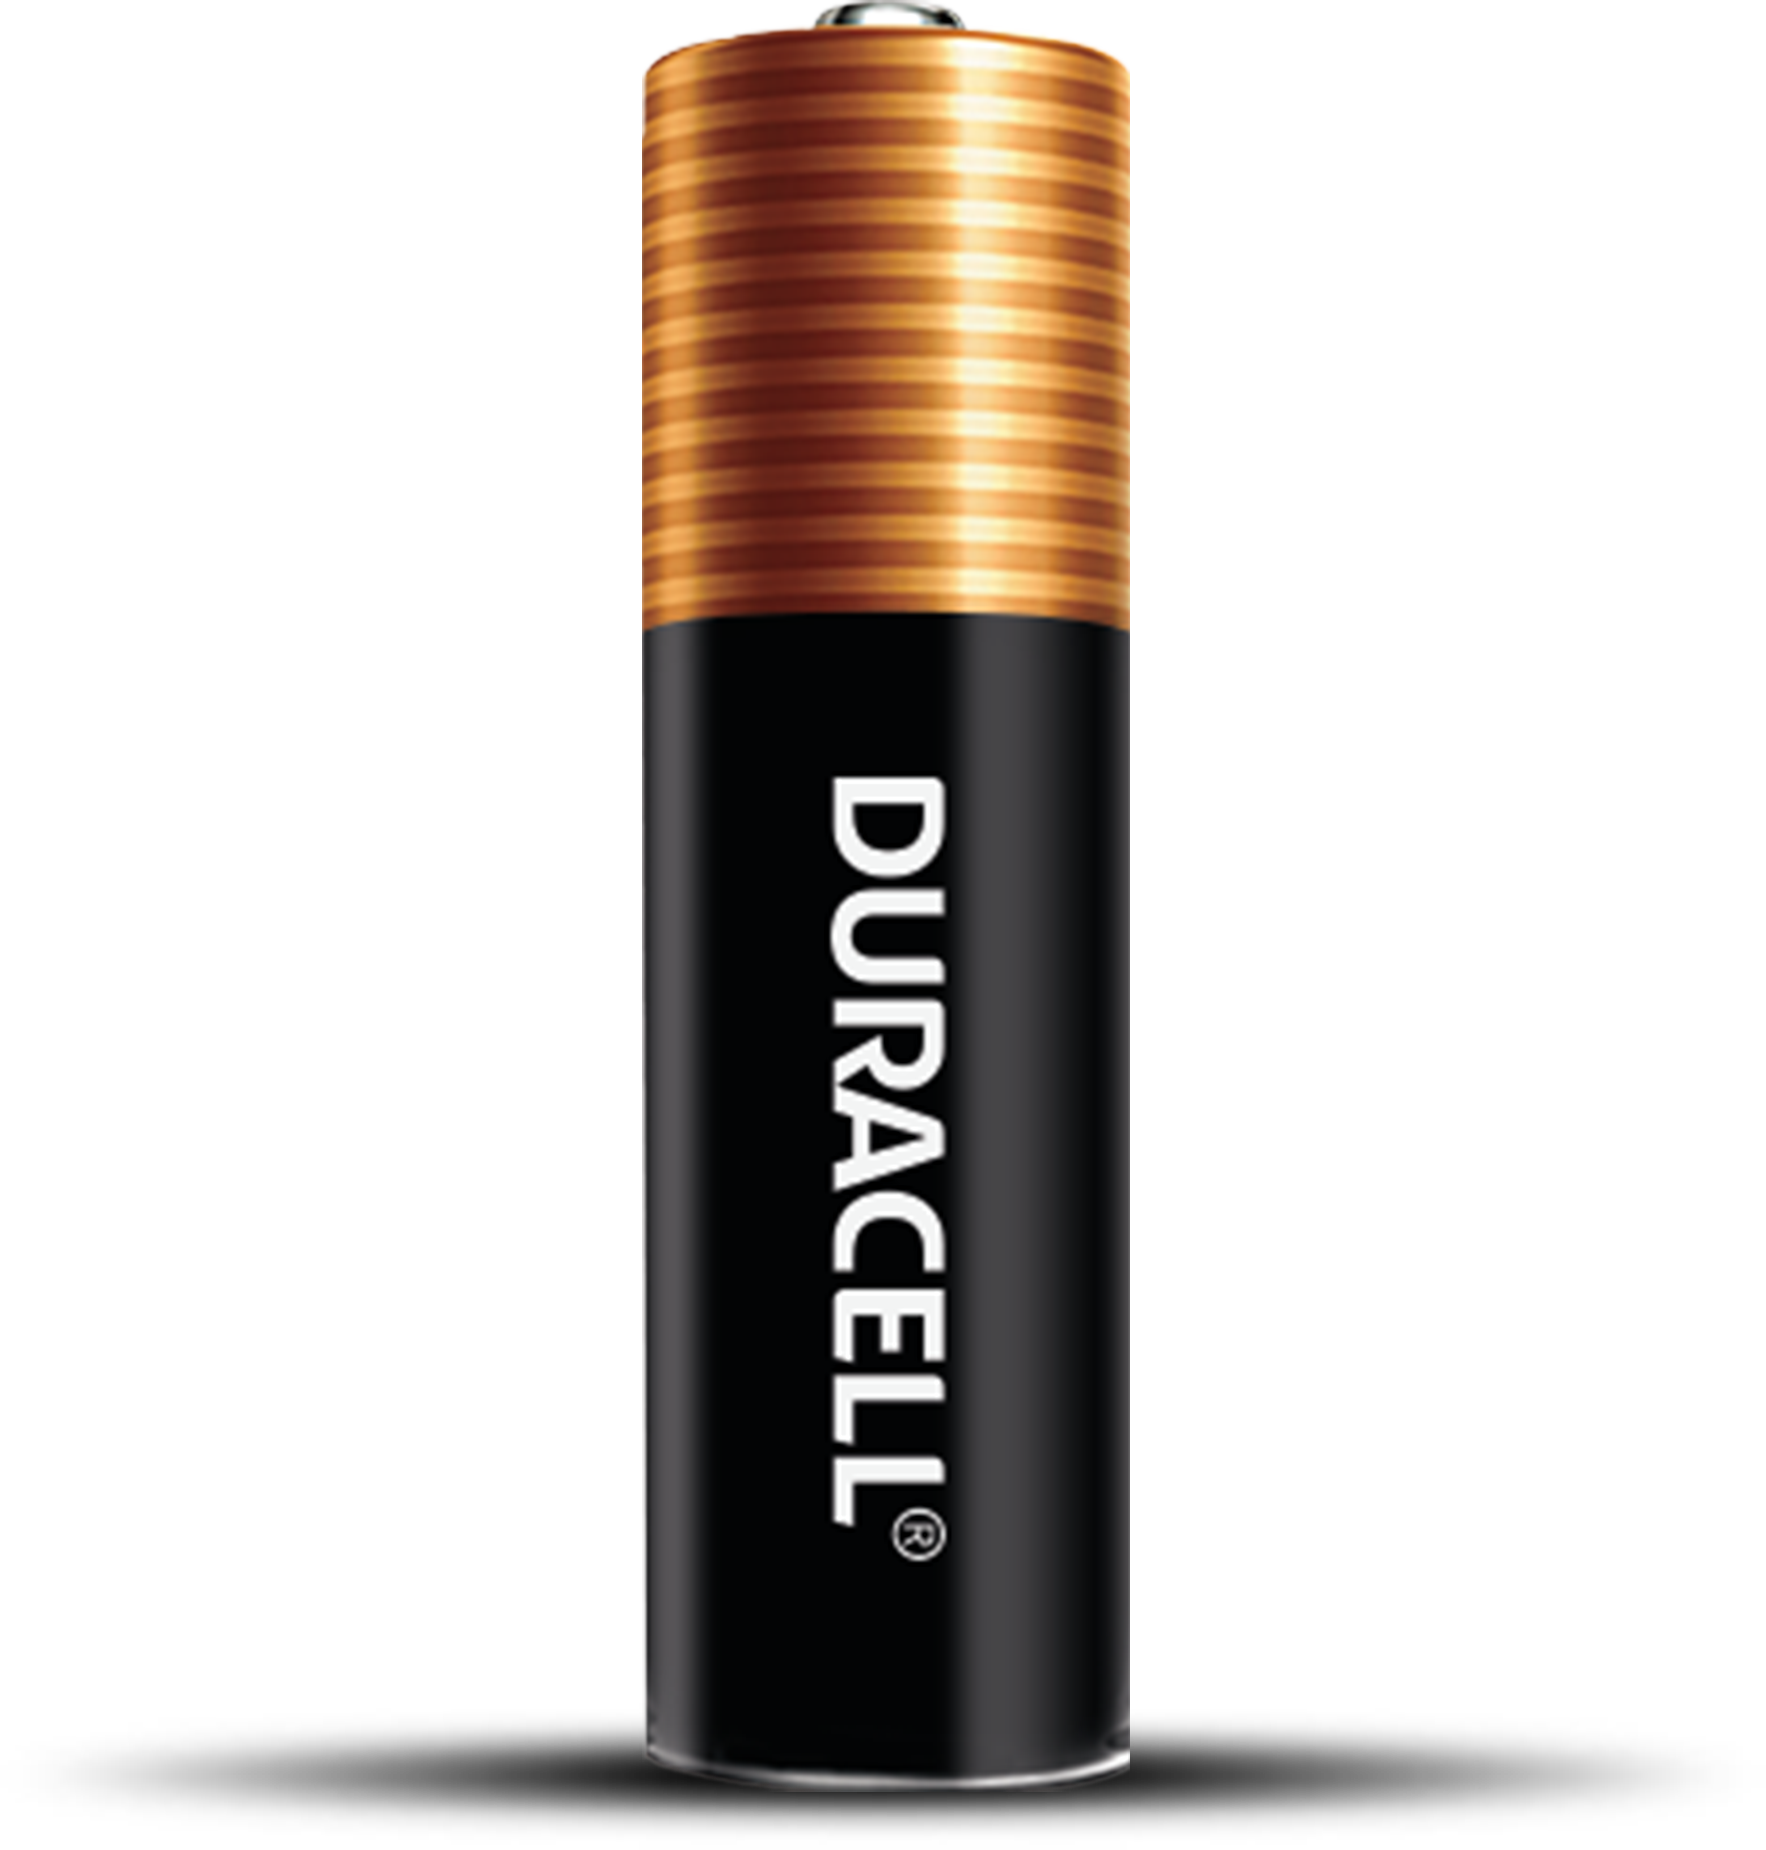 Baterías especiales Duracell